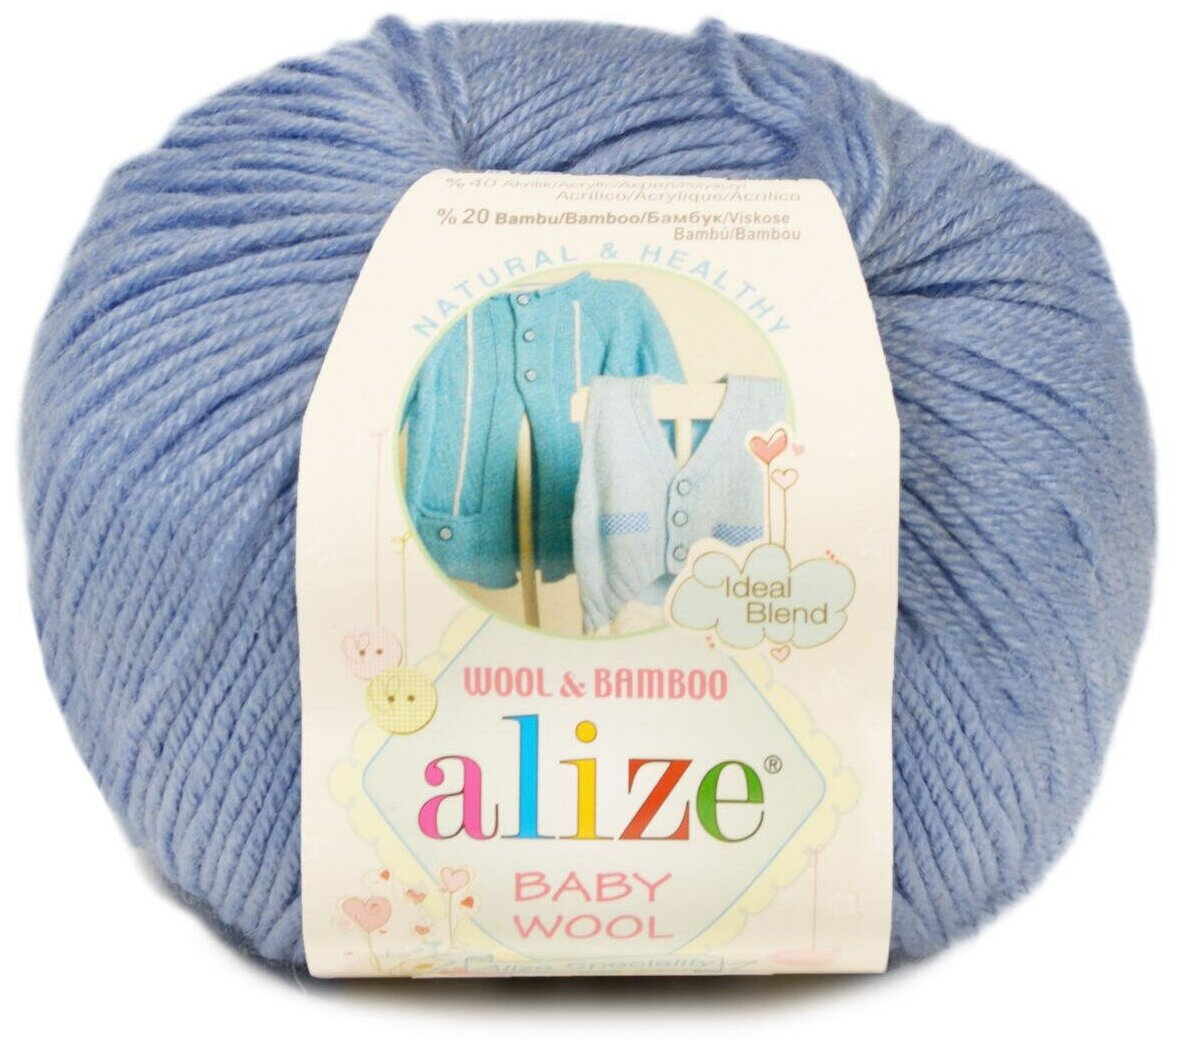 Пряжа Alize Baby Wool голубой (40), 40%шерсть/20%бамбук/40%акрил, 175м, 50г, 3шт